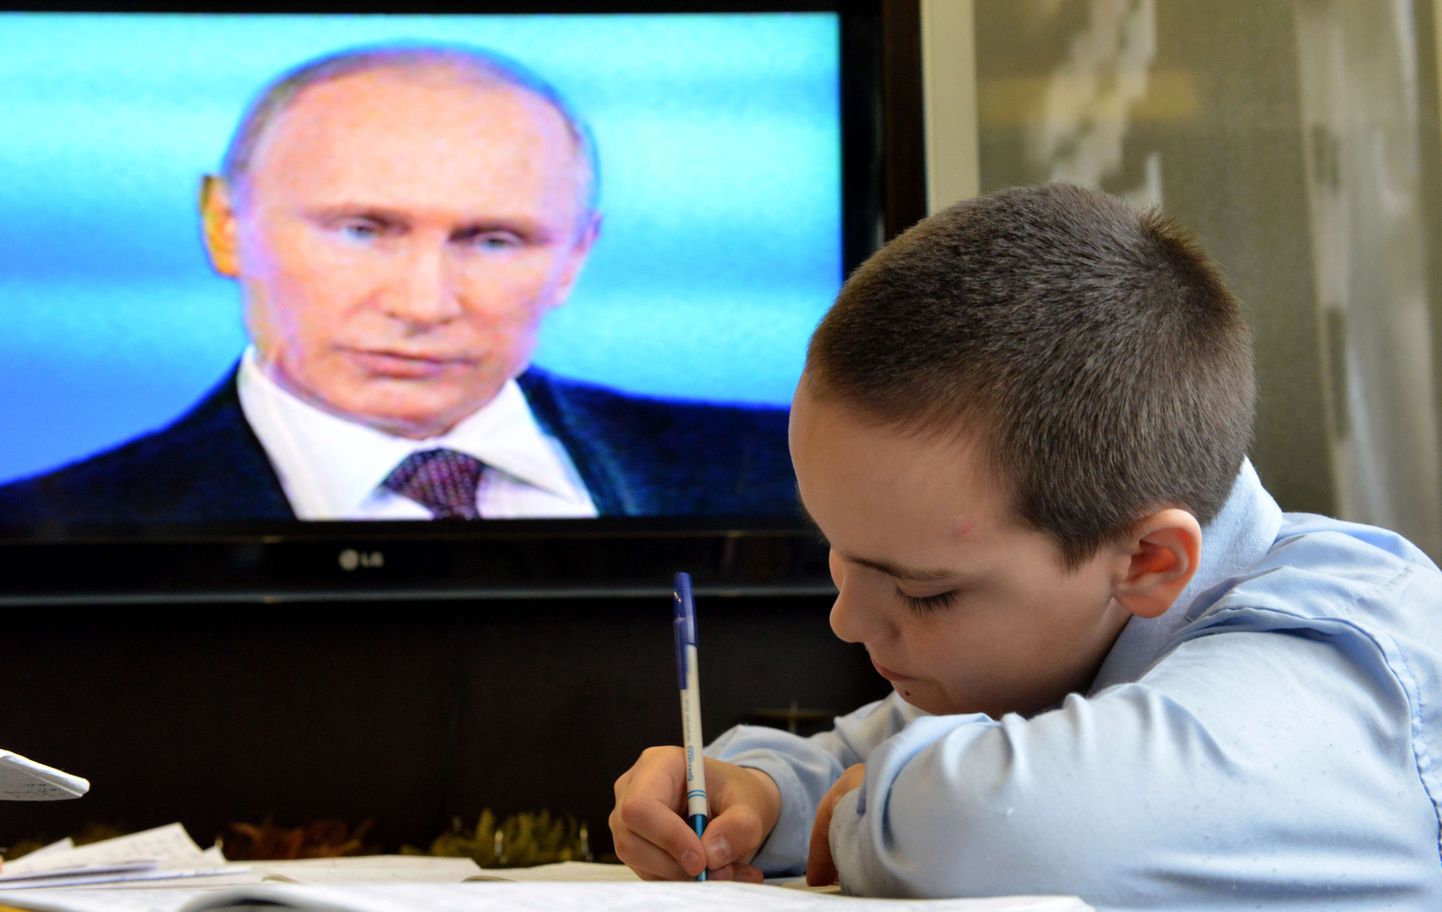 Venemaa õpetajad süüdistavad valitsust koolide kaasamises propagandasse